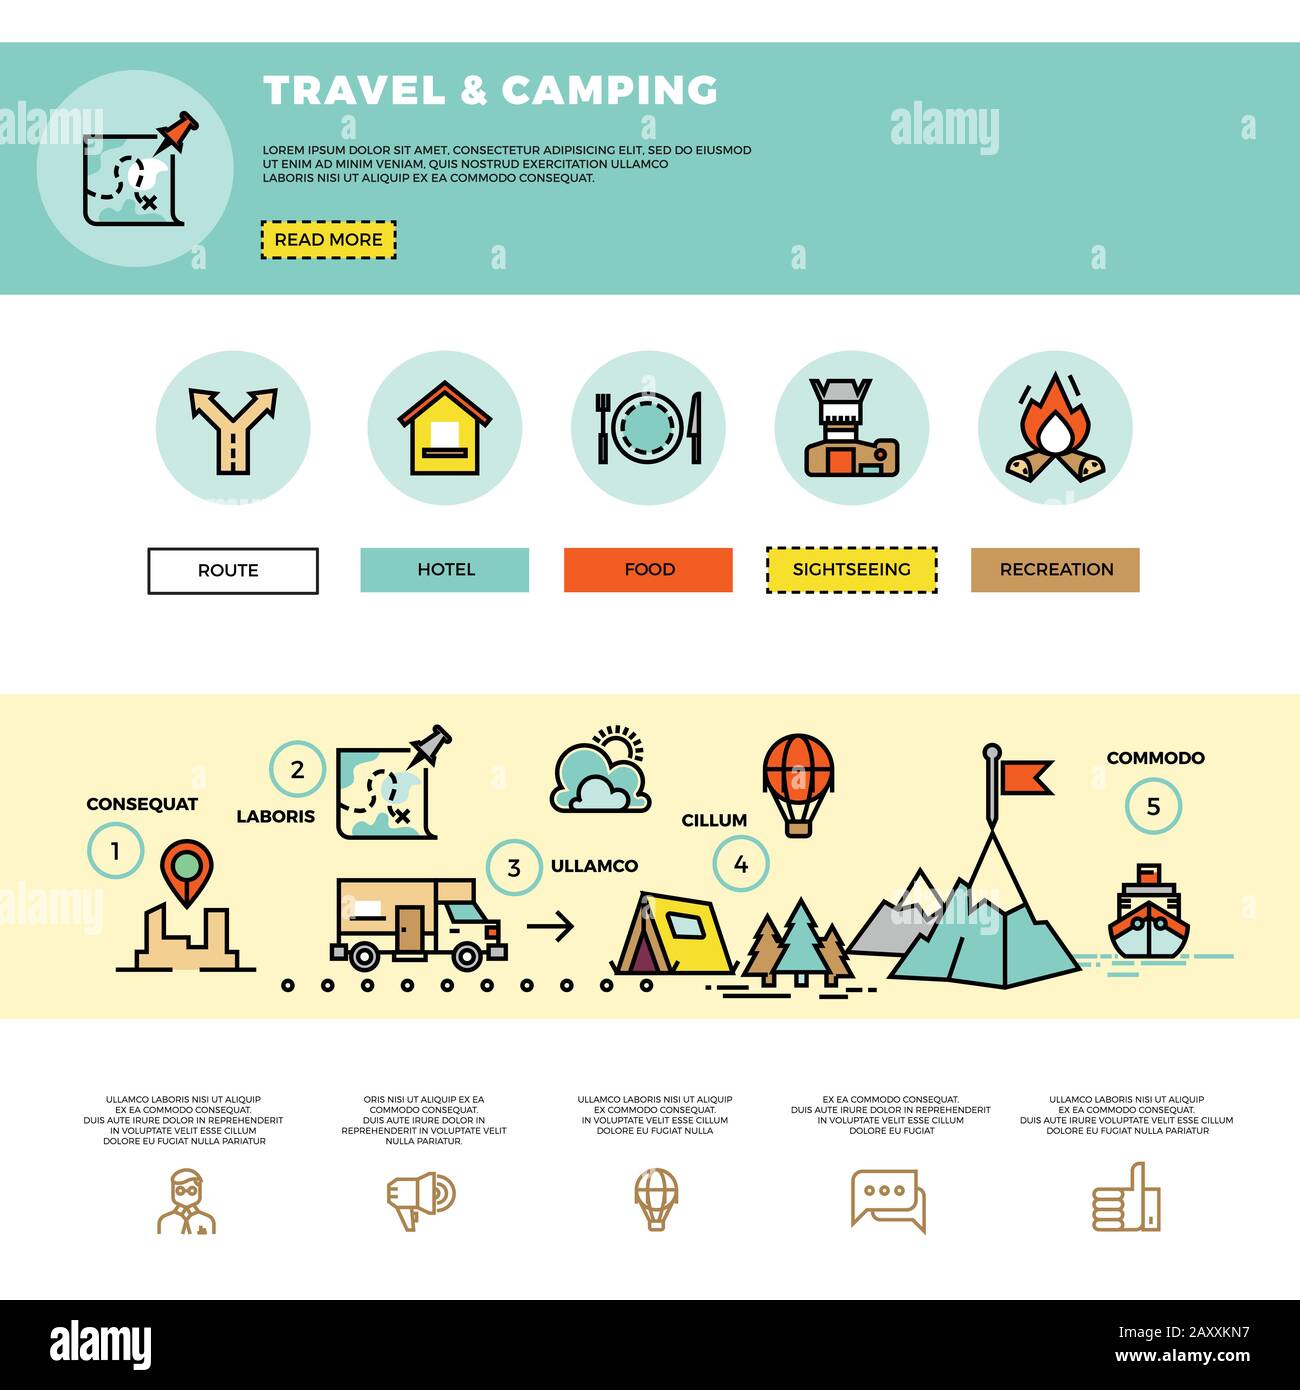 Infografik zu Camping, Reisen und Tourismus. Website-Design-Vorlage. Tourism Travel Website, Website Reise und Camping, Infografik Trabel Web il Stock Vektor